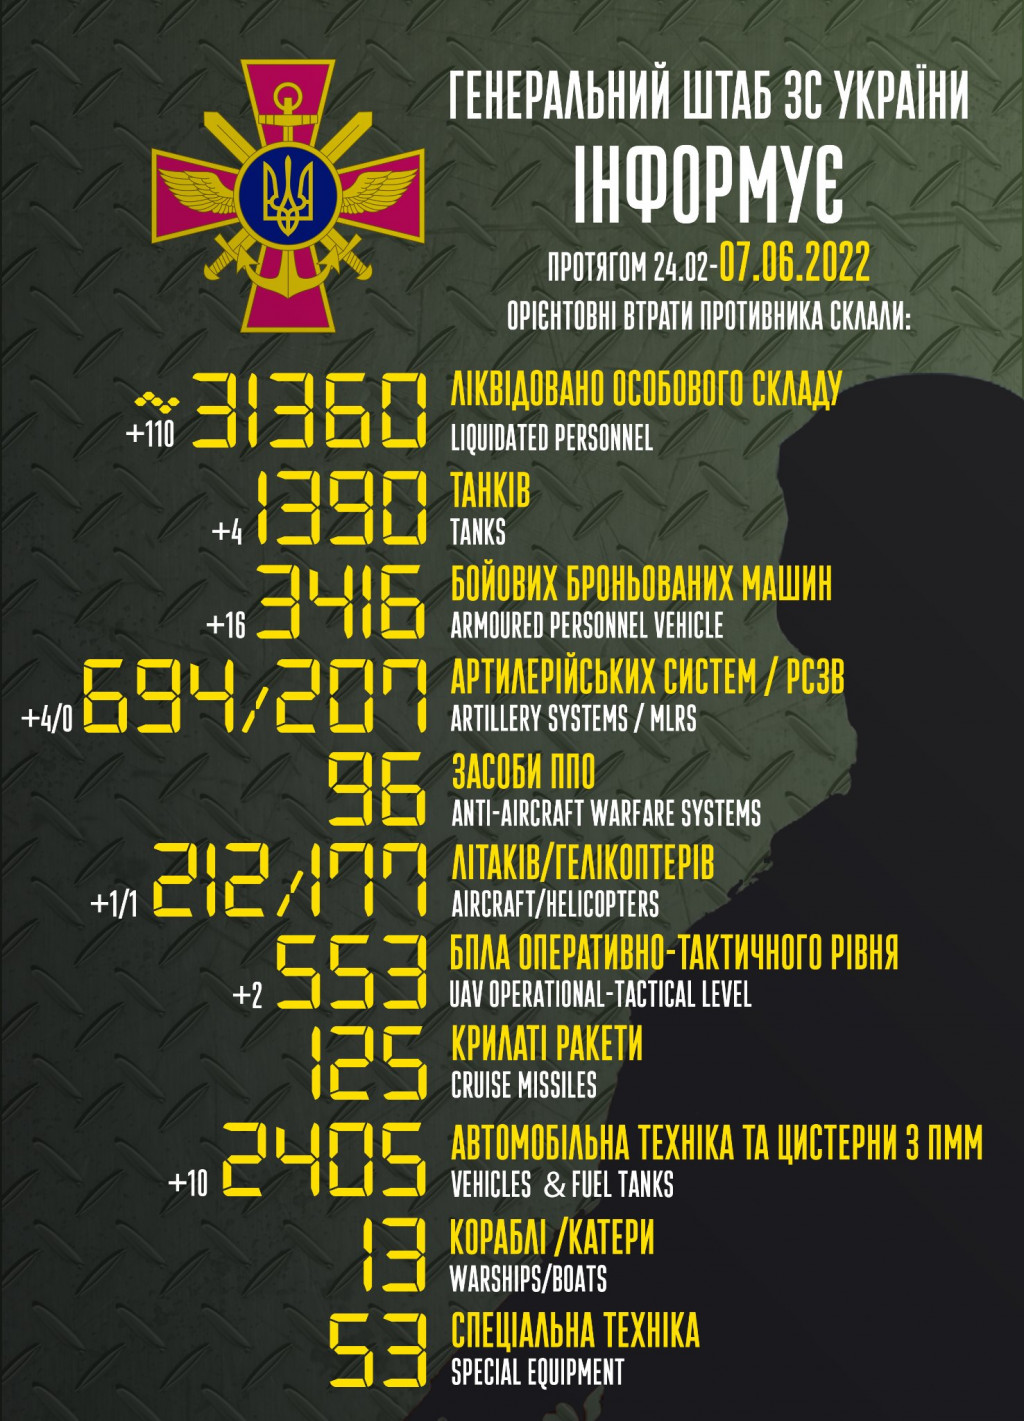 Армія рашистів втратила понад 31, 6 тисячі вояків та 1390 танків, - Генштаб ЗСУ